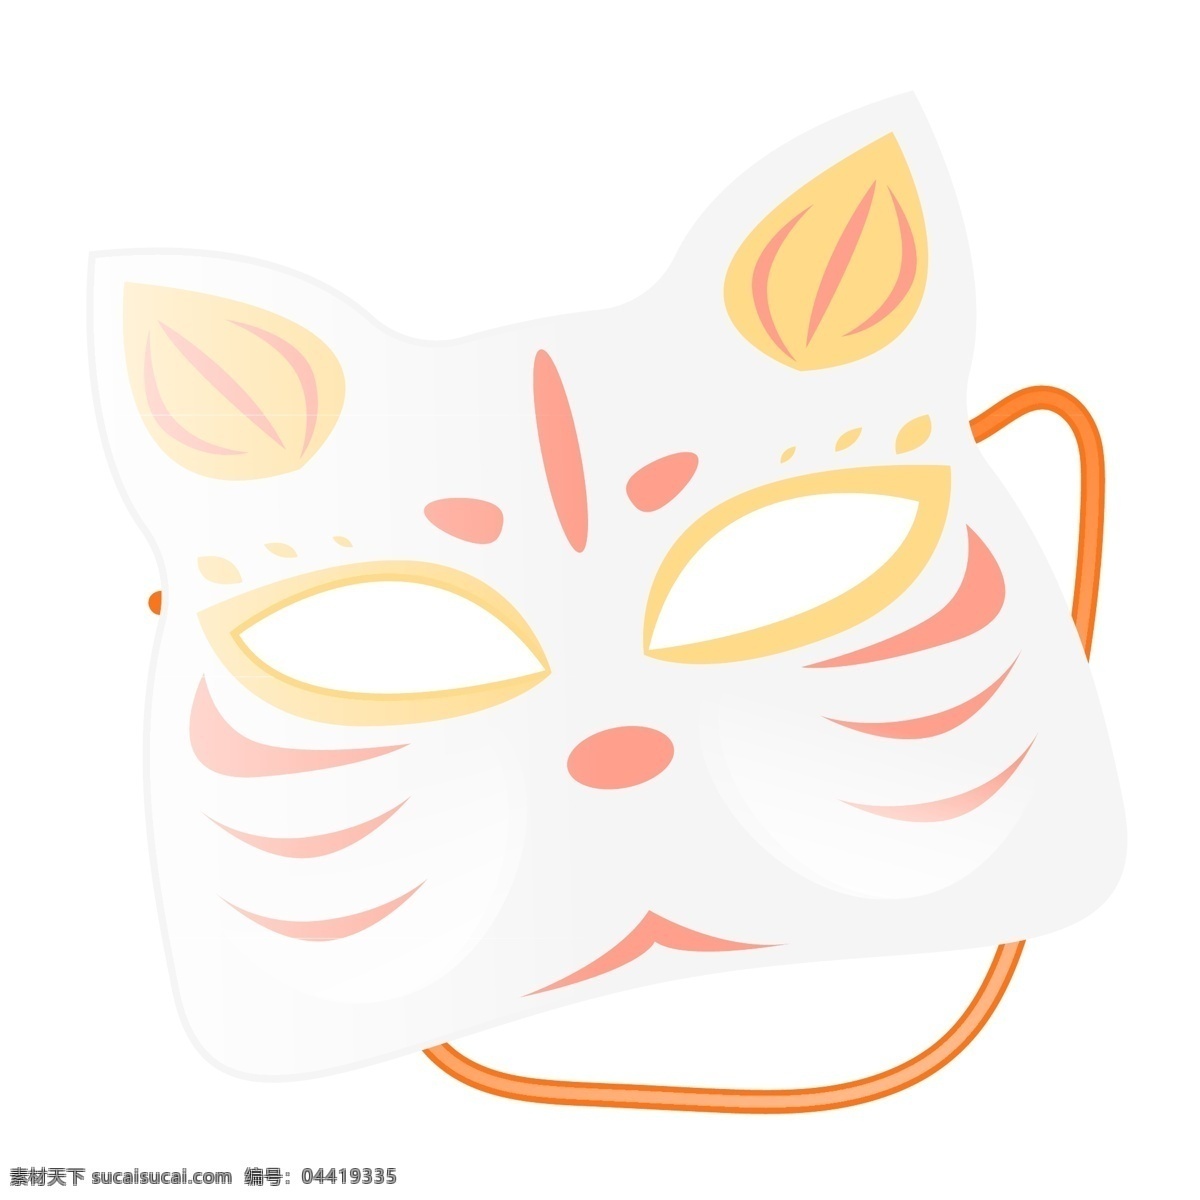 日本 小猫 脸谱 插画 日本脸谱 猫咪脸谱 猫咪 脸谱插图 日本小猫脸谱 白色猫咪脸谱